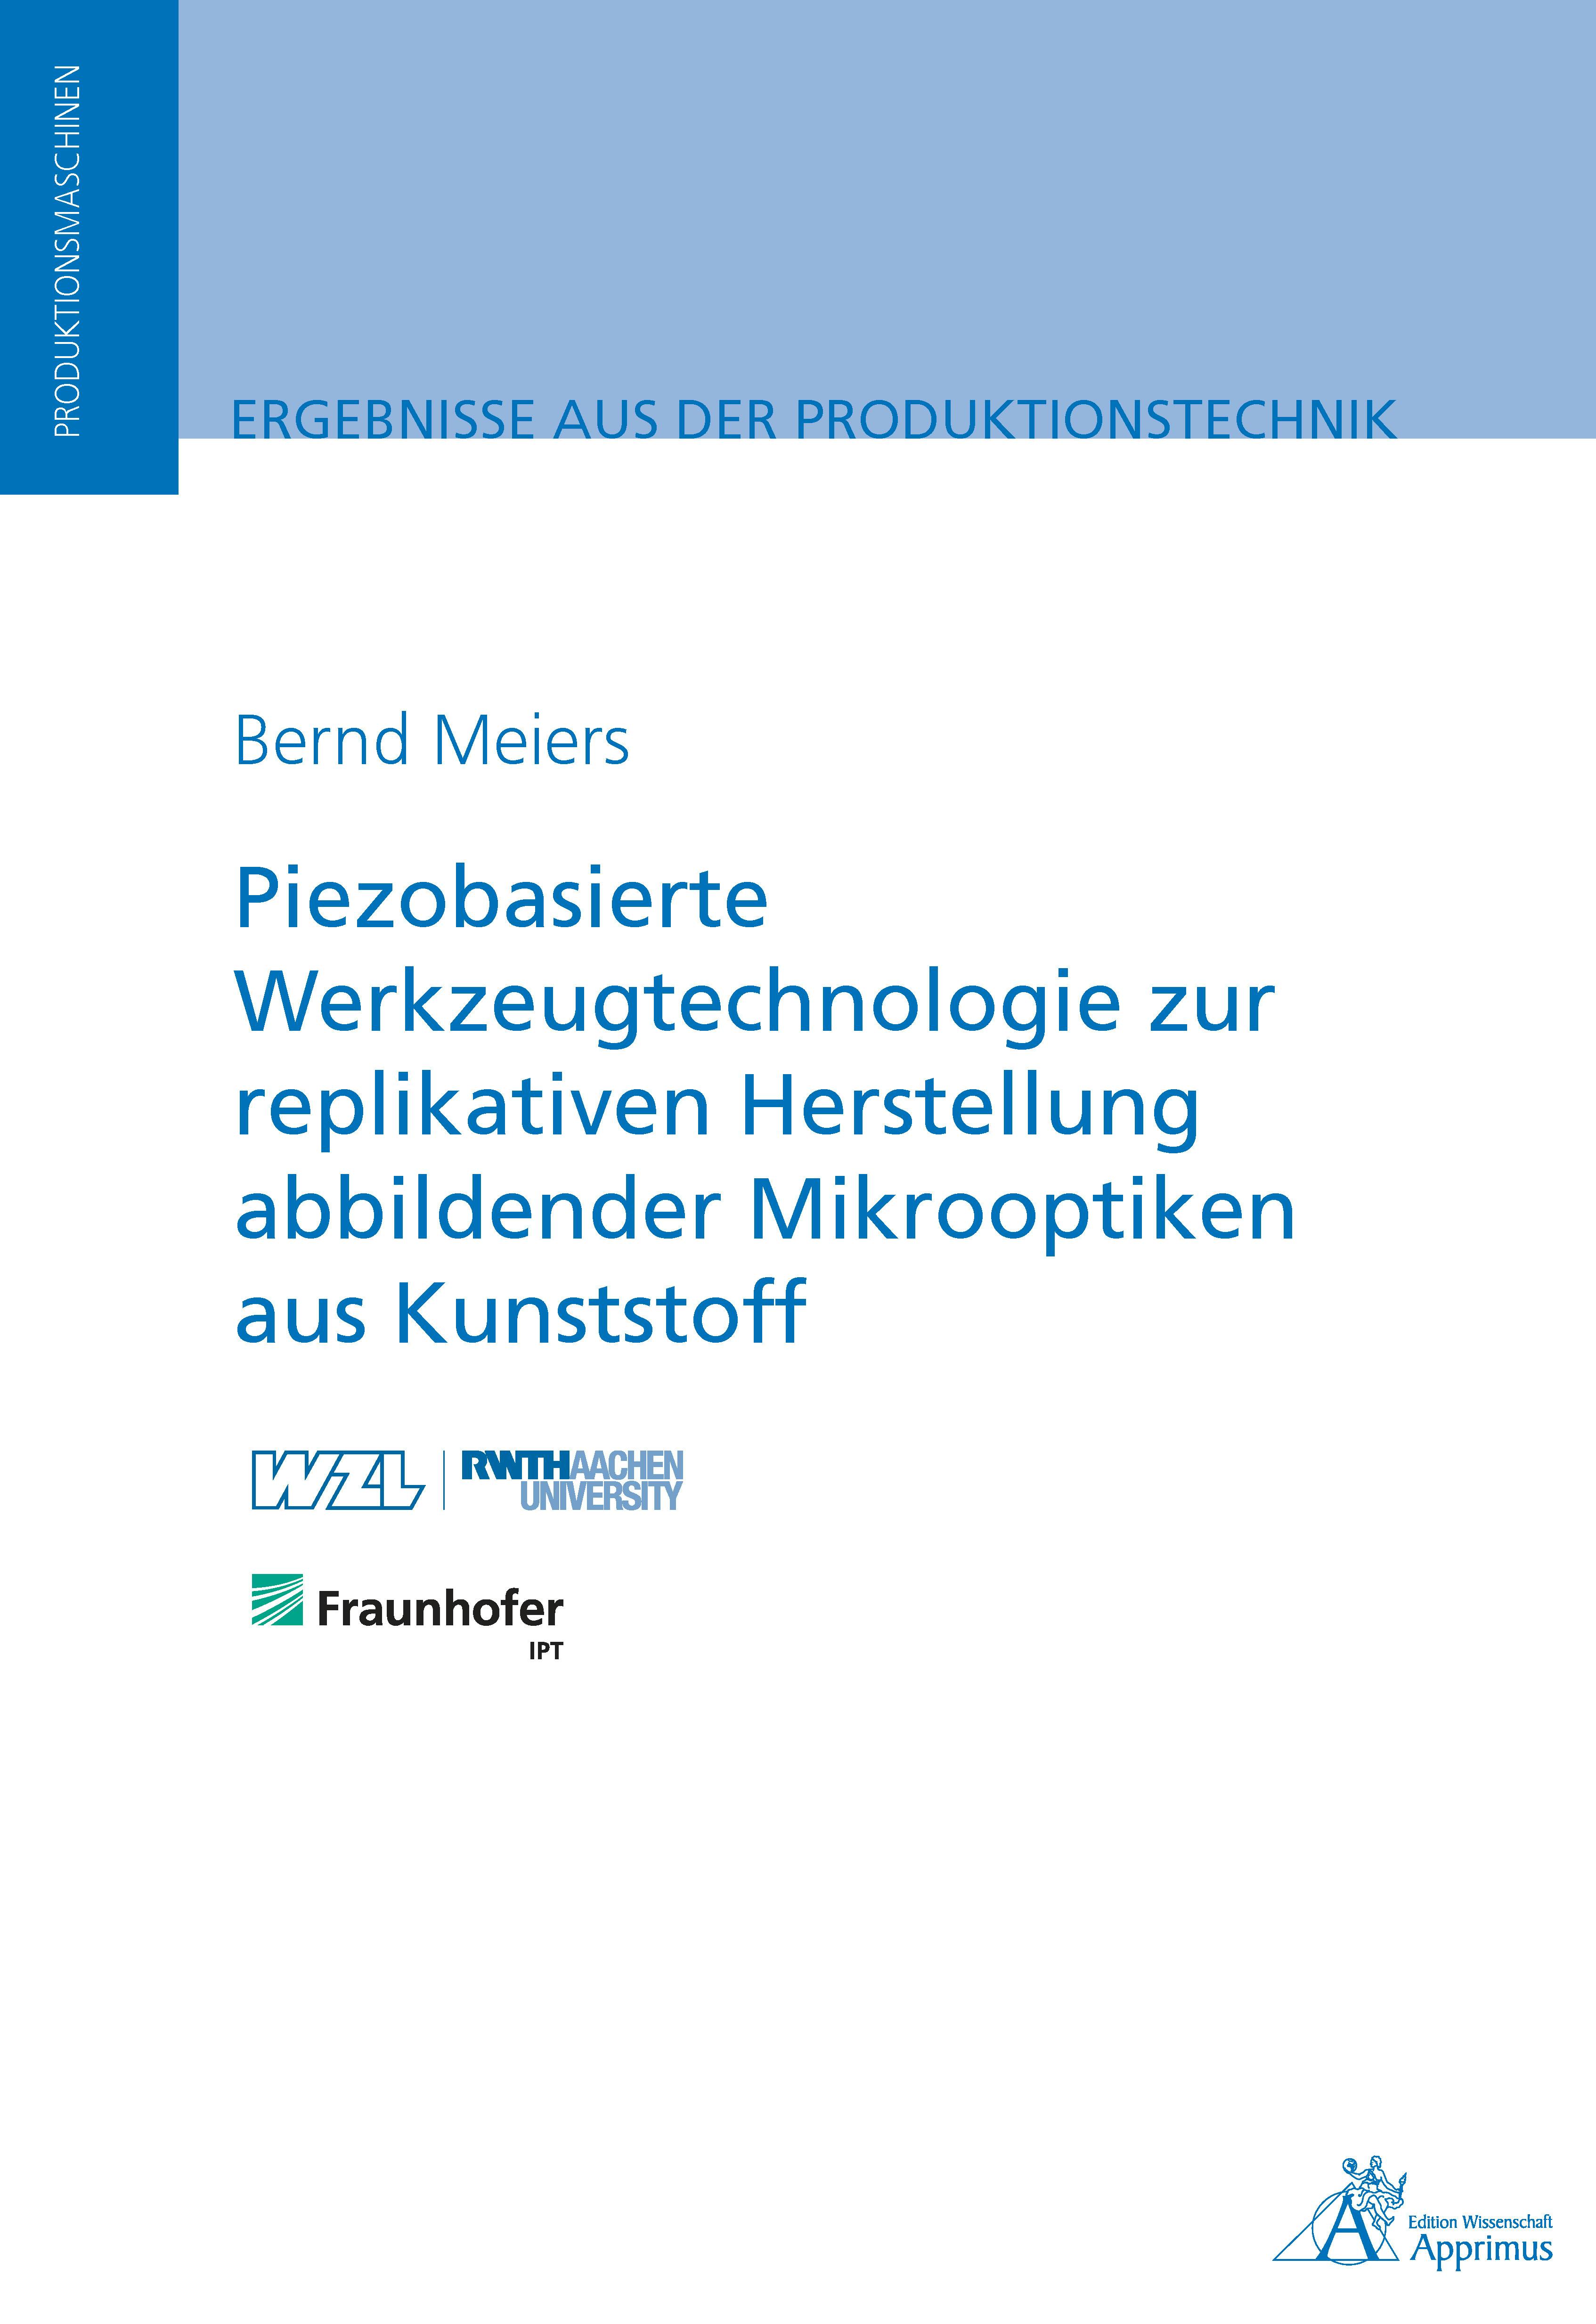 Piezobasierte Werkzeugtechnologie zur replikativen Herstellung abbildender Mikrooptiken: aus Kunststoff - Bernd Meiers